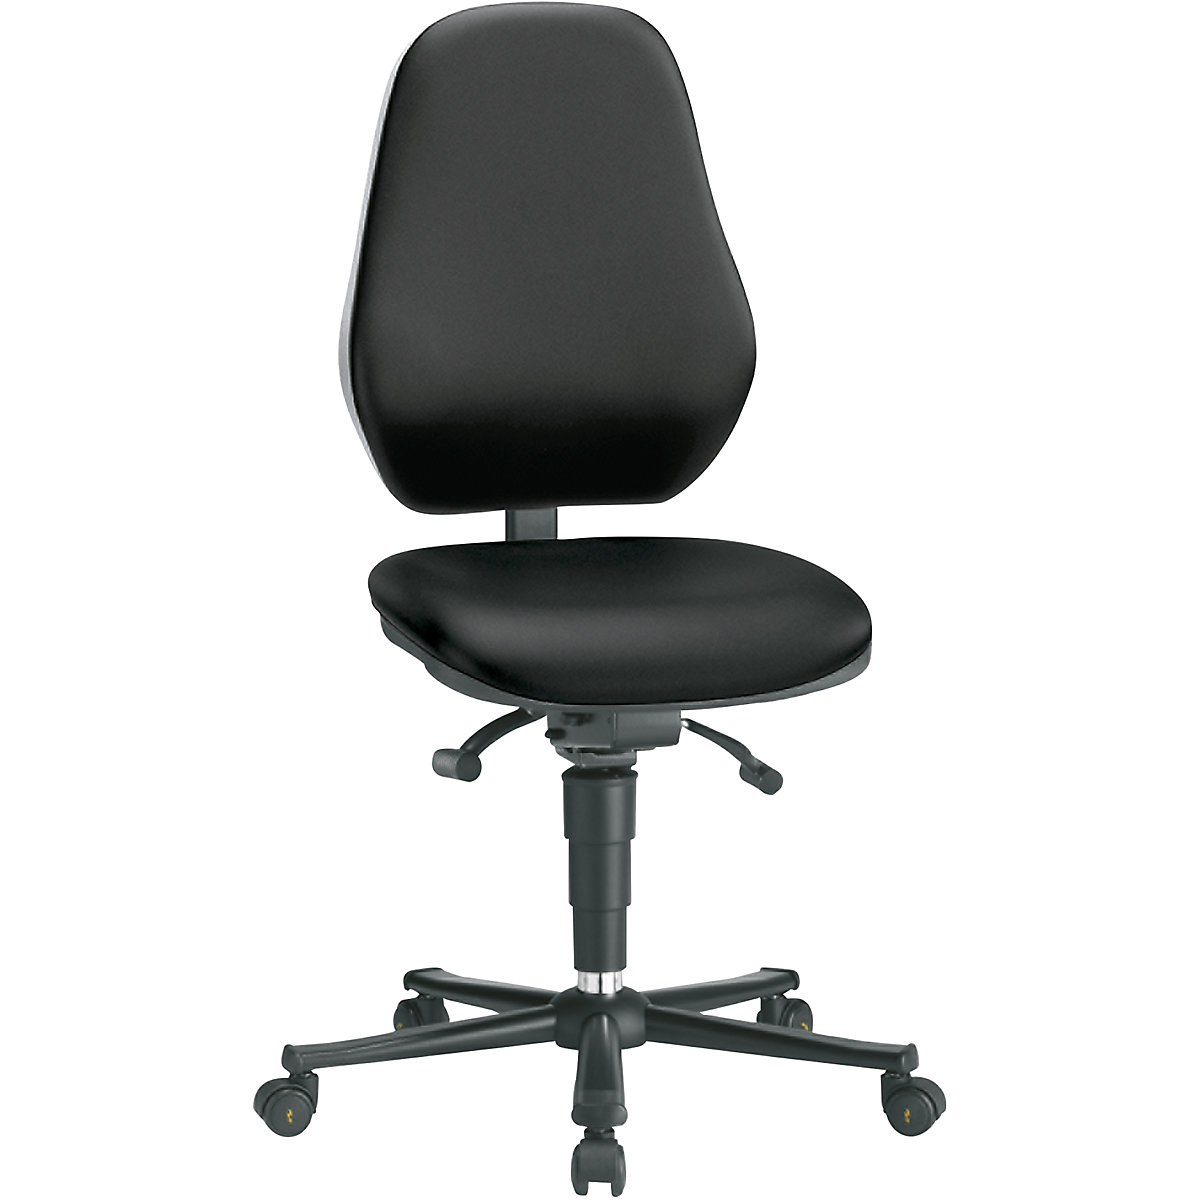 Pracovná otočná stolička – bimos, s ochranou ESD, so synchrónnou mechanikou a reguláciou hmotnosti, s kolieskami, poťah z umelej kože čierna-7